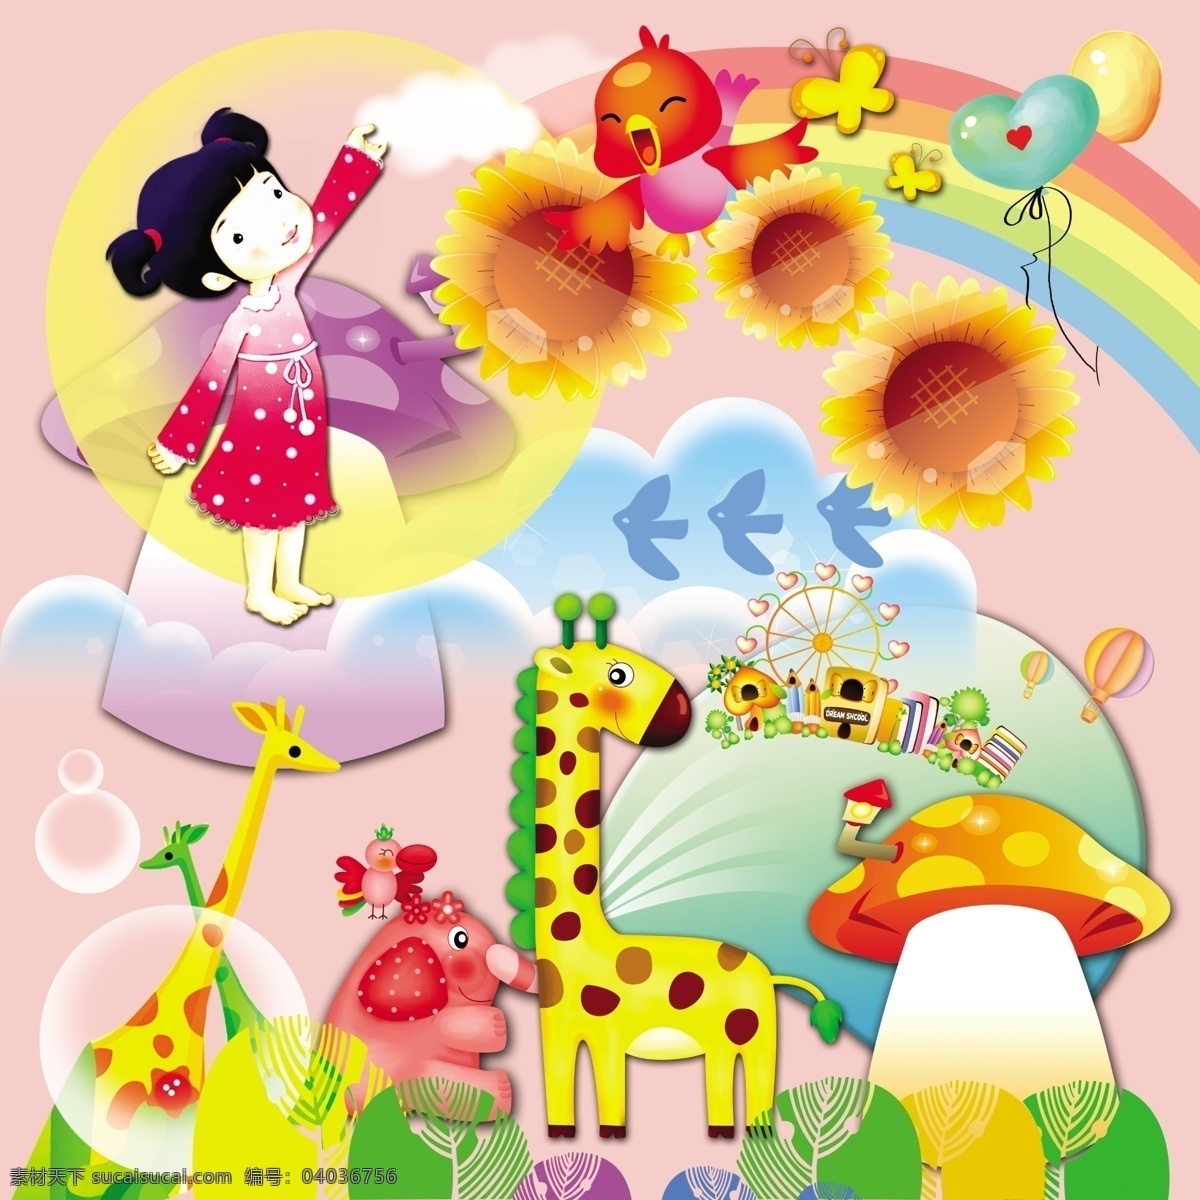 彩虹 大象 儿童节 分层 节日素材 可爱 素材模板下载 幼儿园 素材素材下载 小鸟 源文件 六一儿童节